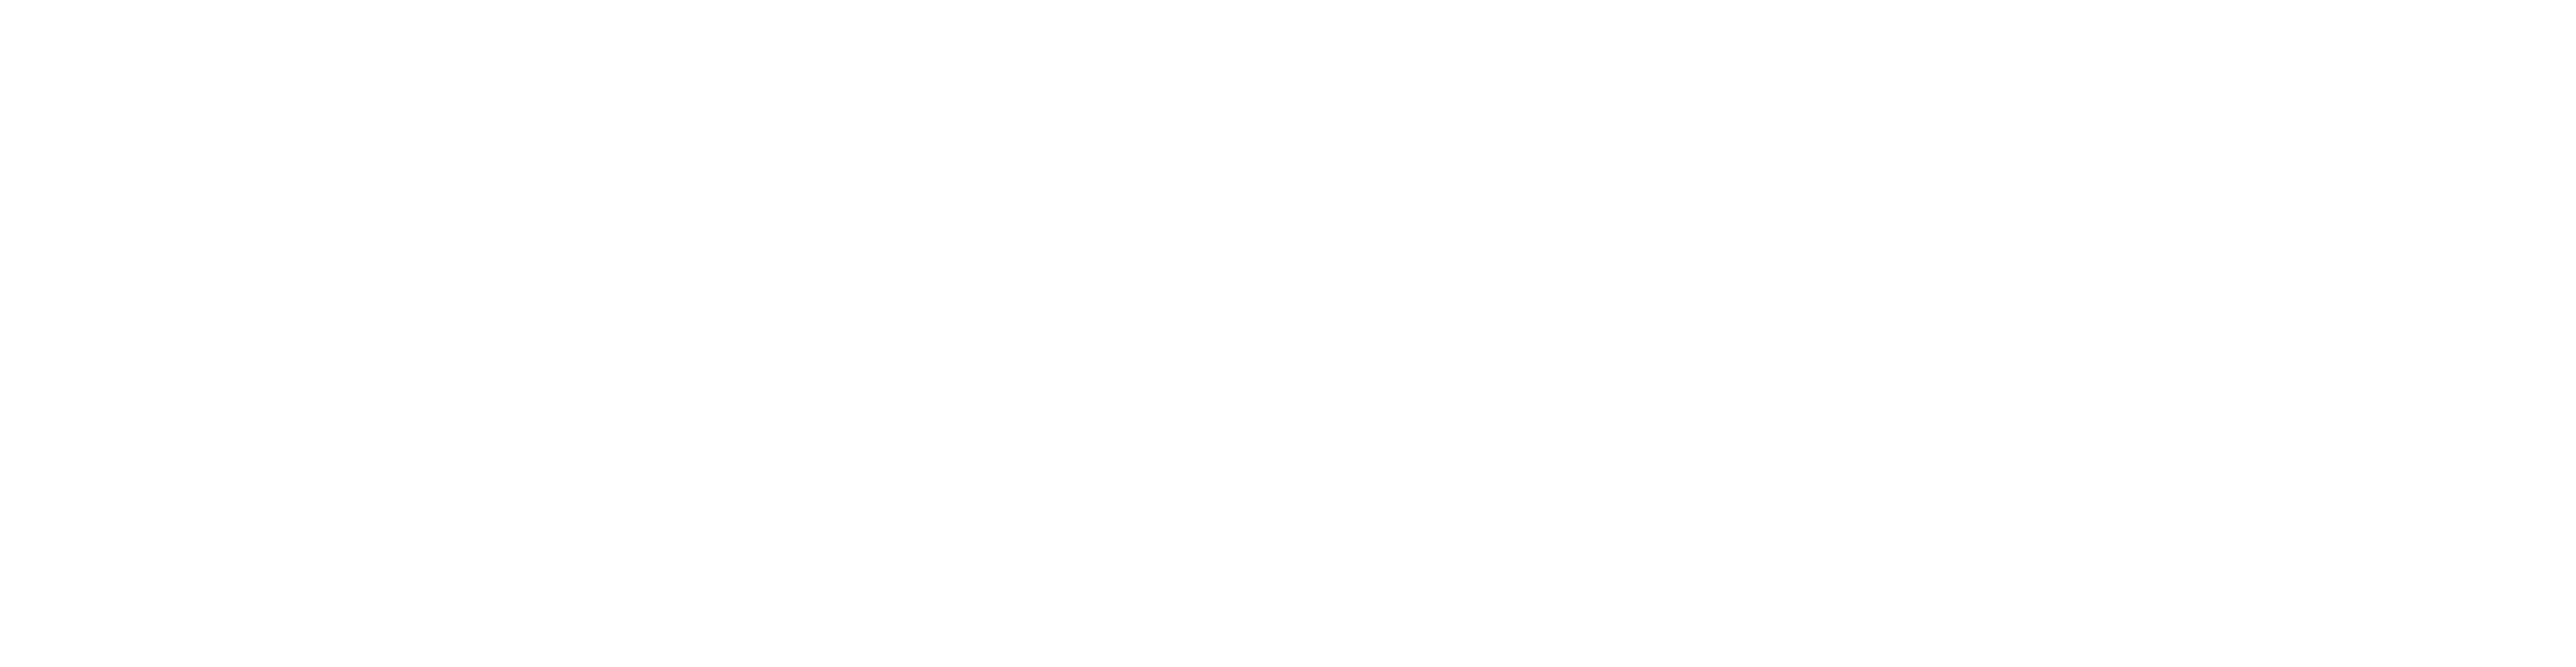 dom perignon logo